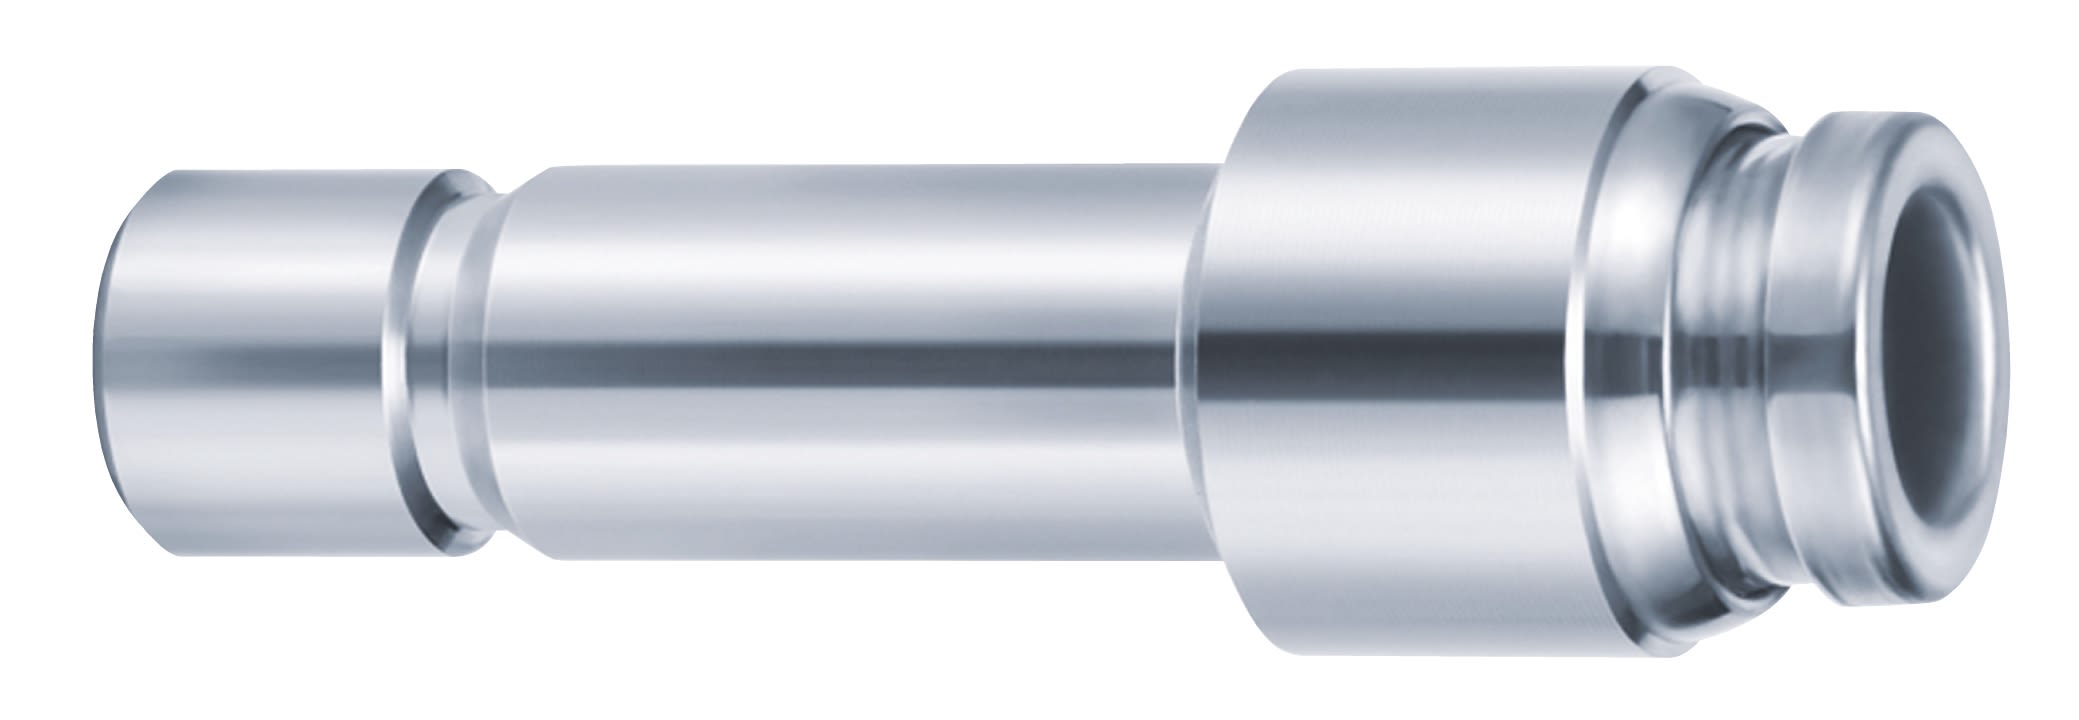 SMC KQG2 Series Straight Tube-to-Tube Adaptor, Push In 4 mm to Push In 6 mm, Tube-to-Tube Connection Style